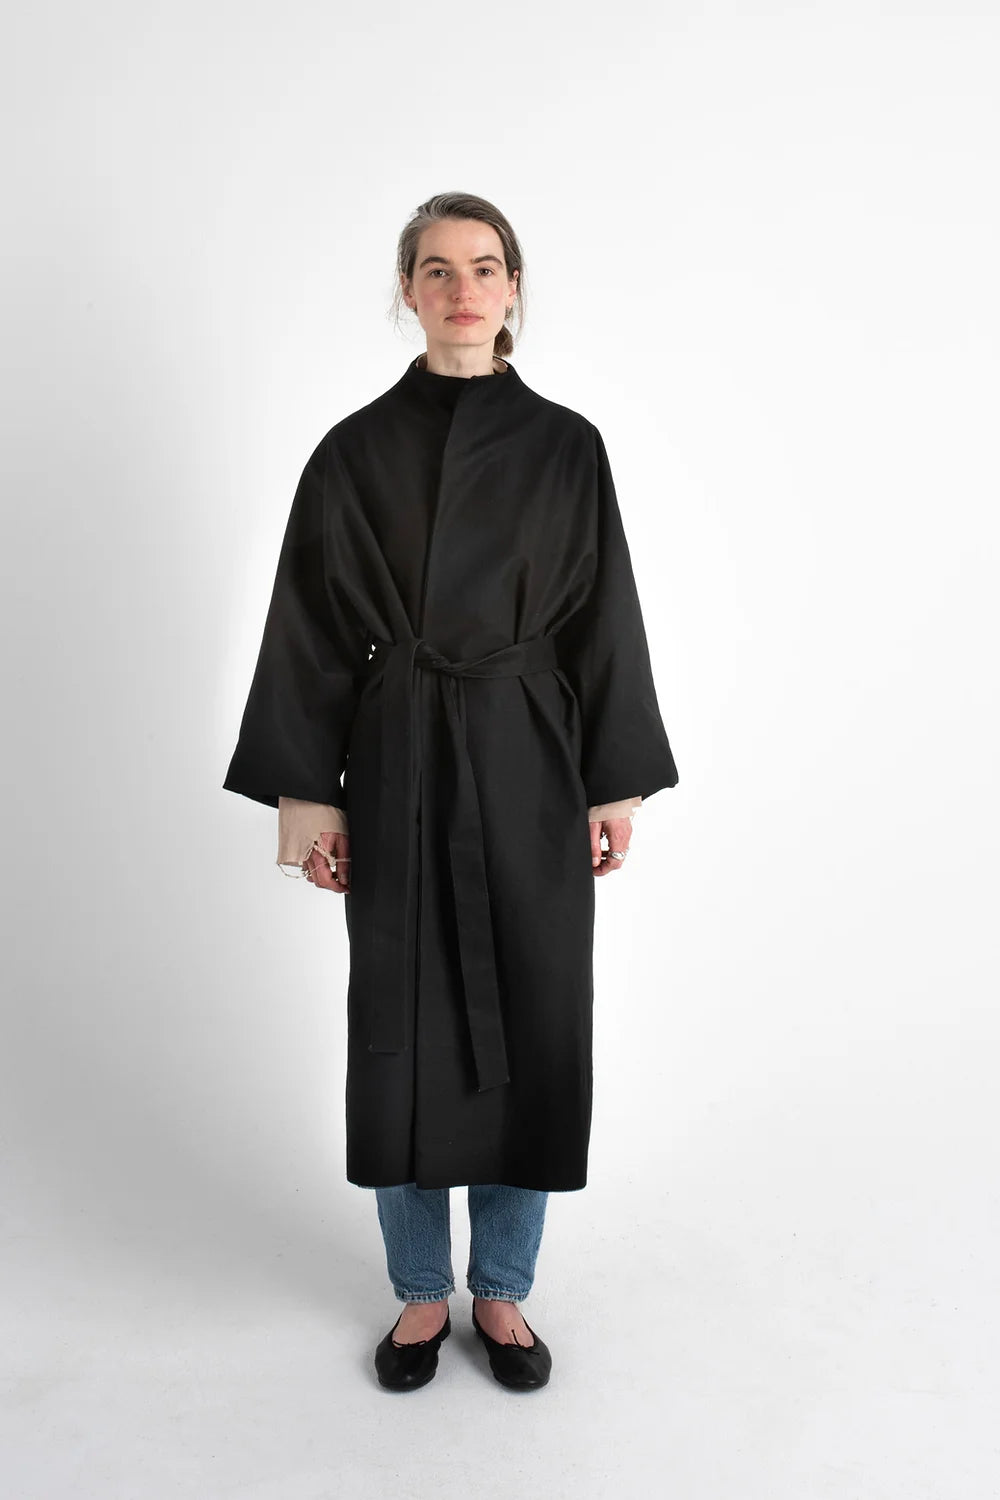 Coat nr 5 in black by Lea Roesch